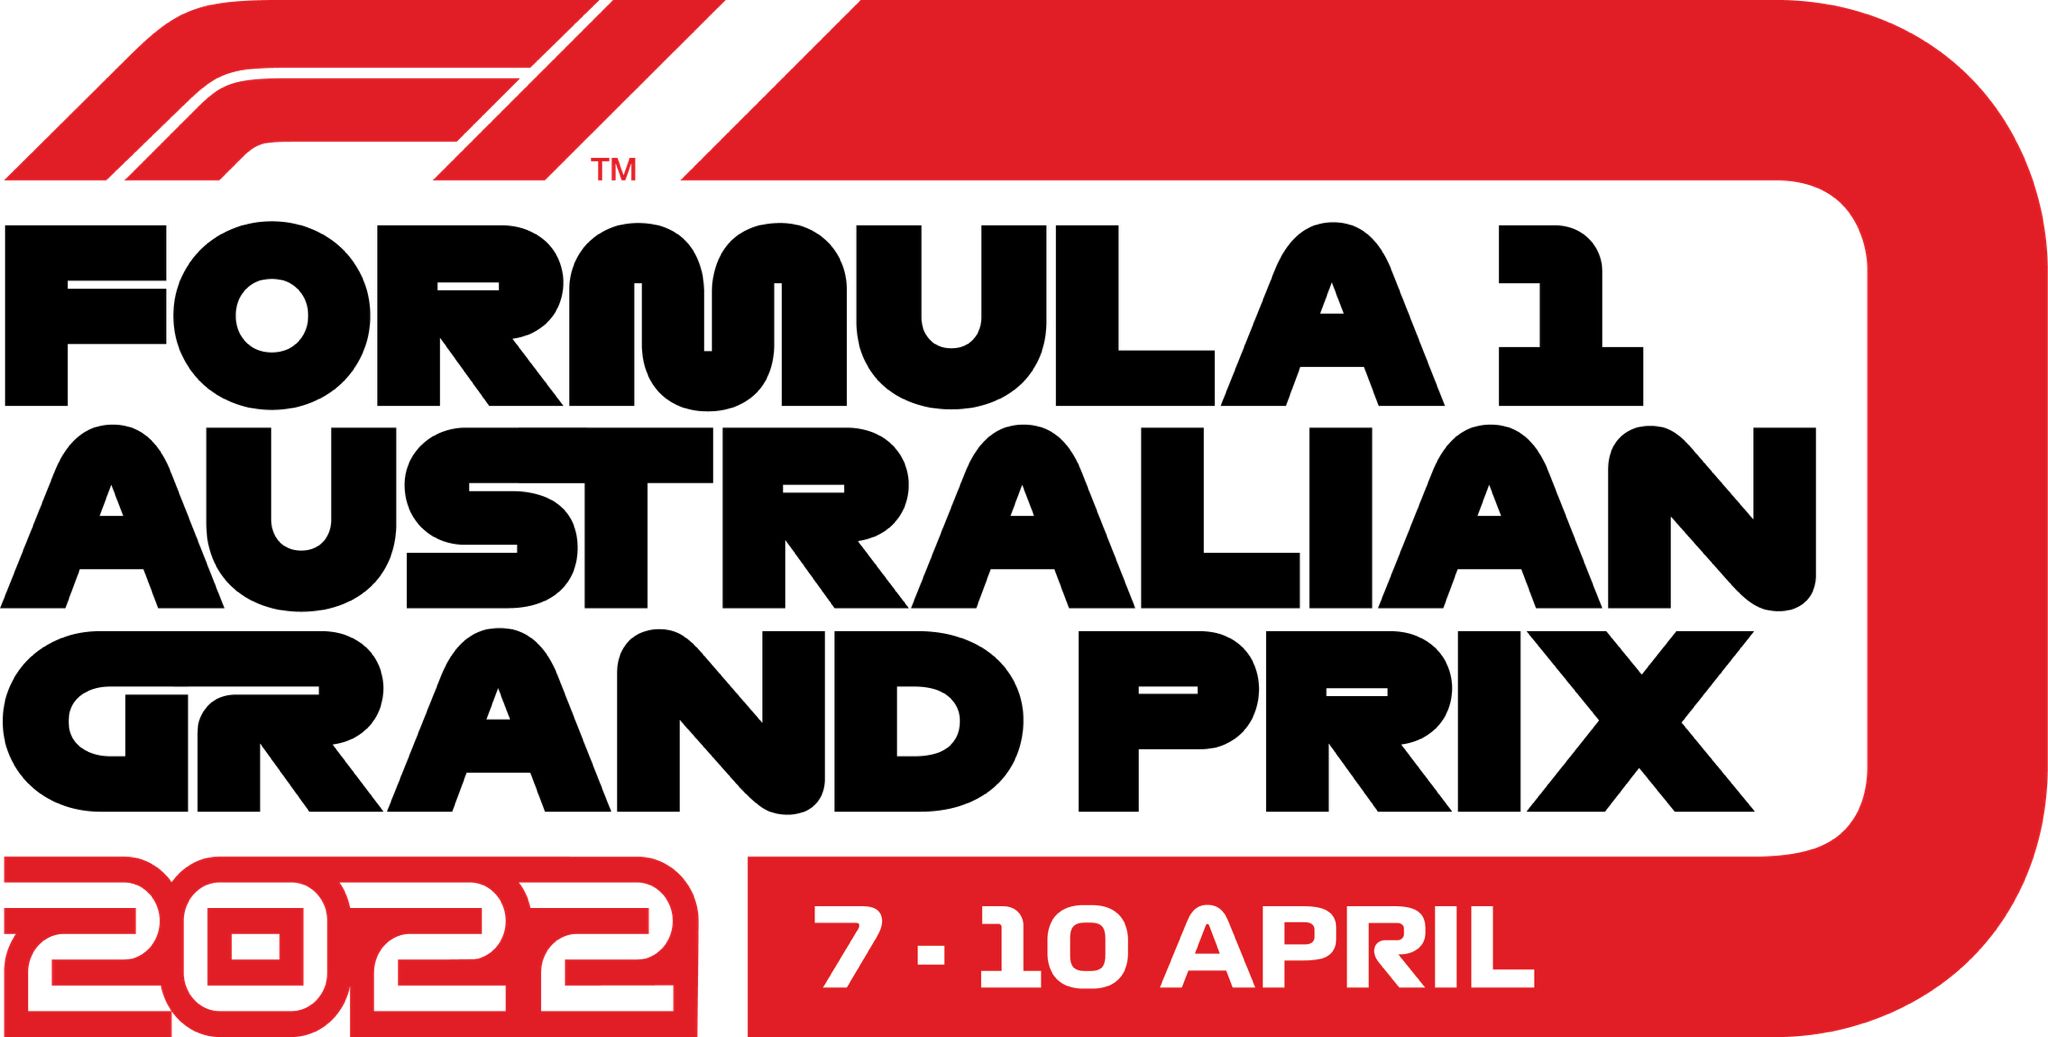 FORMULA 1 AUSTRALIAN GRAND PRIX 2022
GIOVEDI 07 APRILE - DOMENICA 10 APRILE, 2022
MELBOURNE, AUSTRALIA